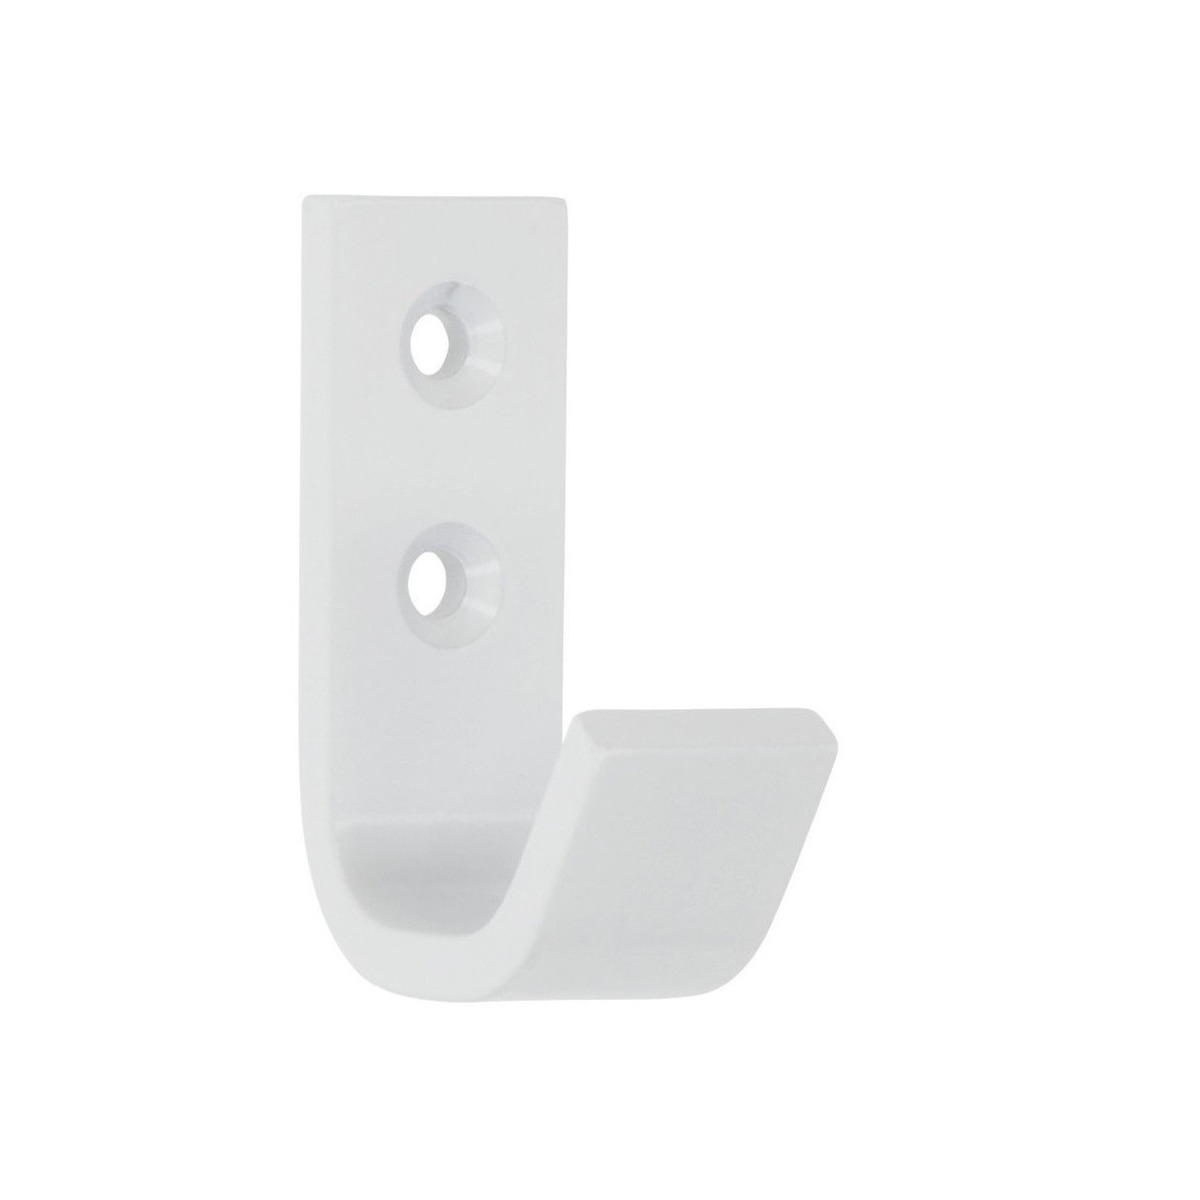 1x Luxe kapstokhaken-jashaken-kapstokhaakjes wit hoogwaardig aluminium 5,4 x 3,7 cm